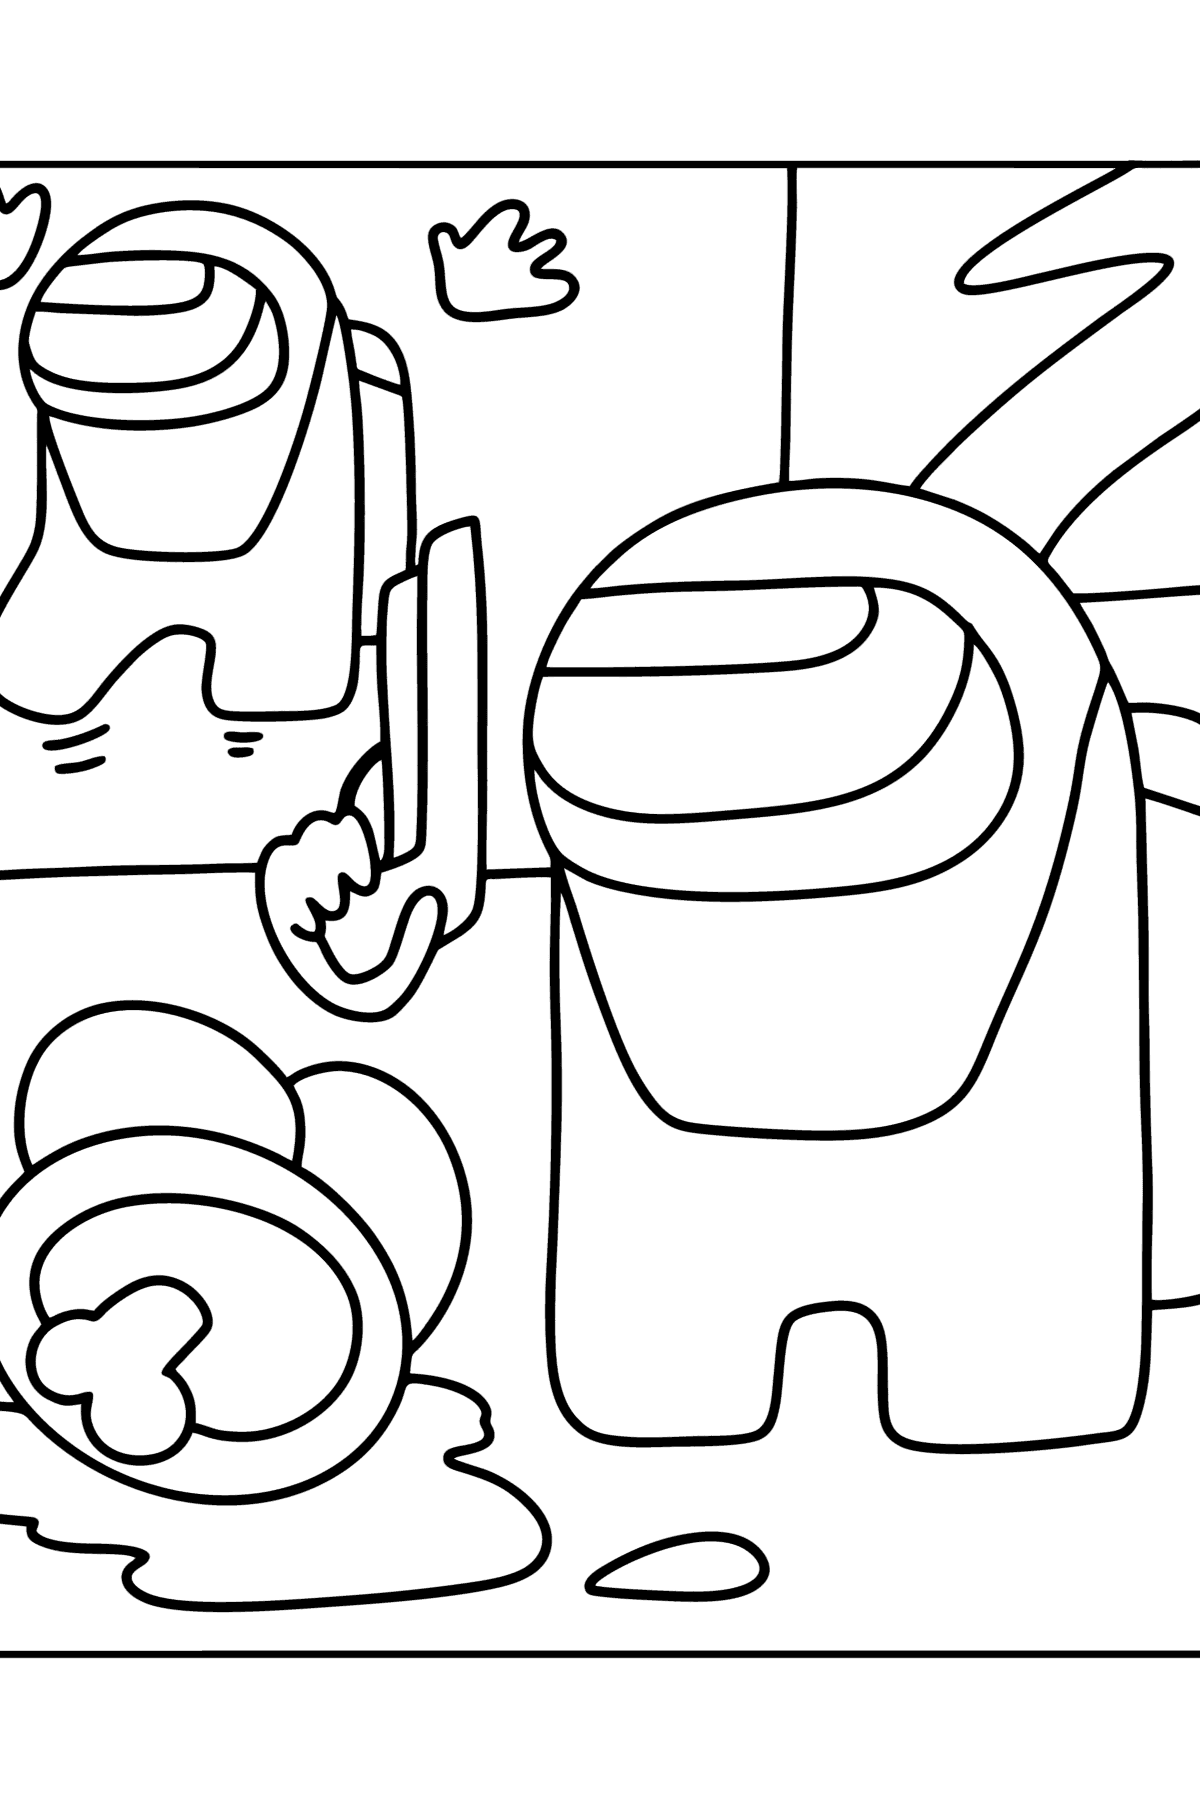 Раскраска Жуткий Сюжет игры Амонг Ас - Картинки для Детей